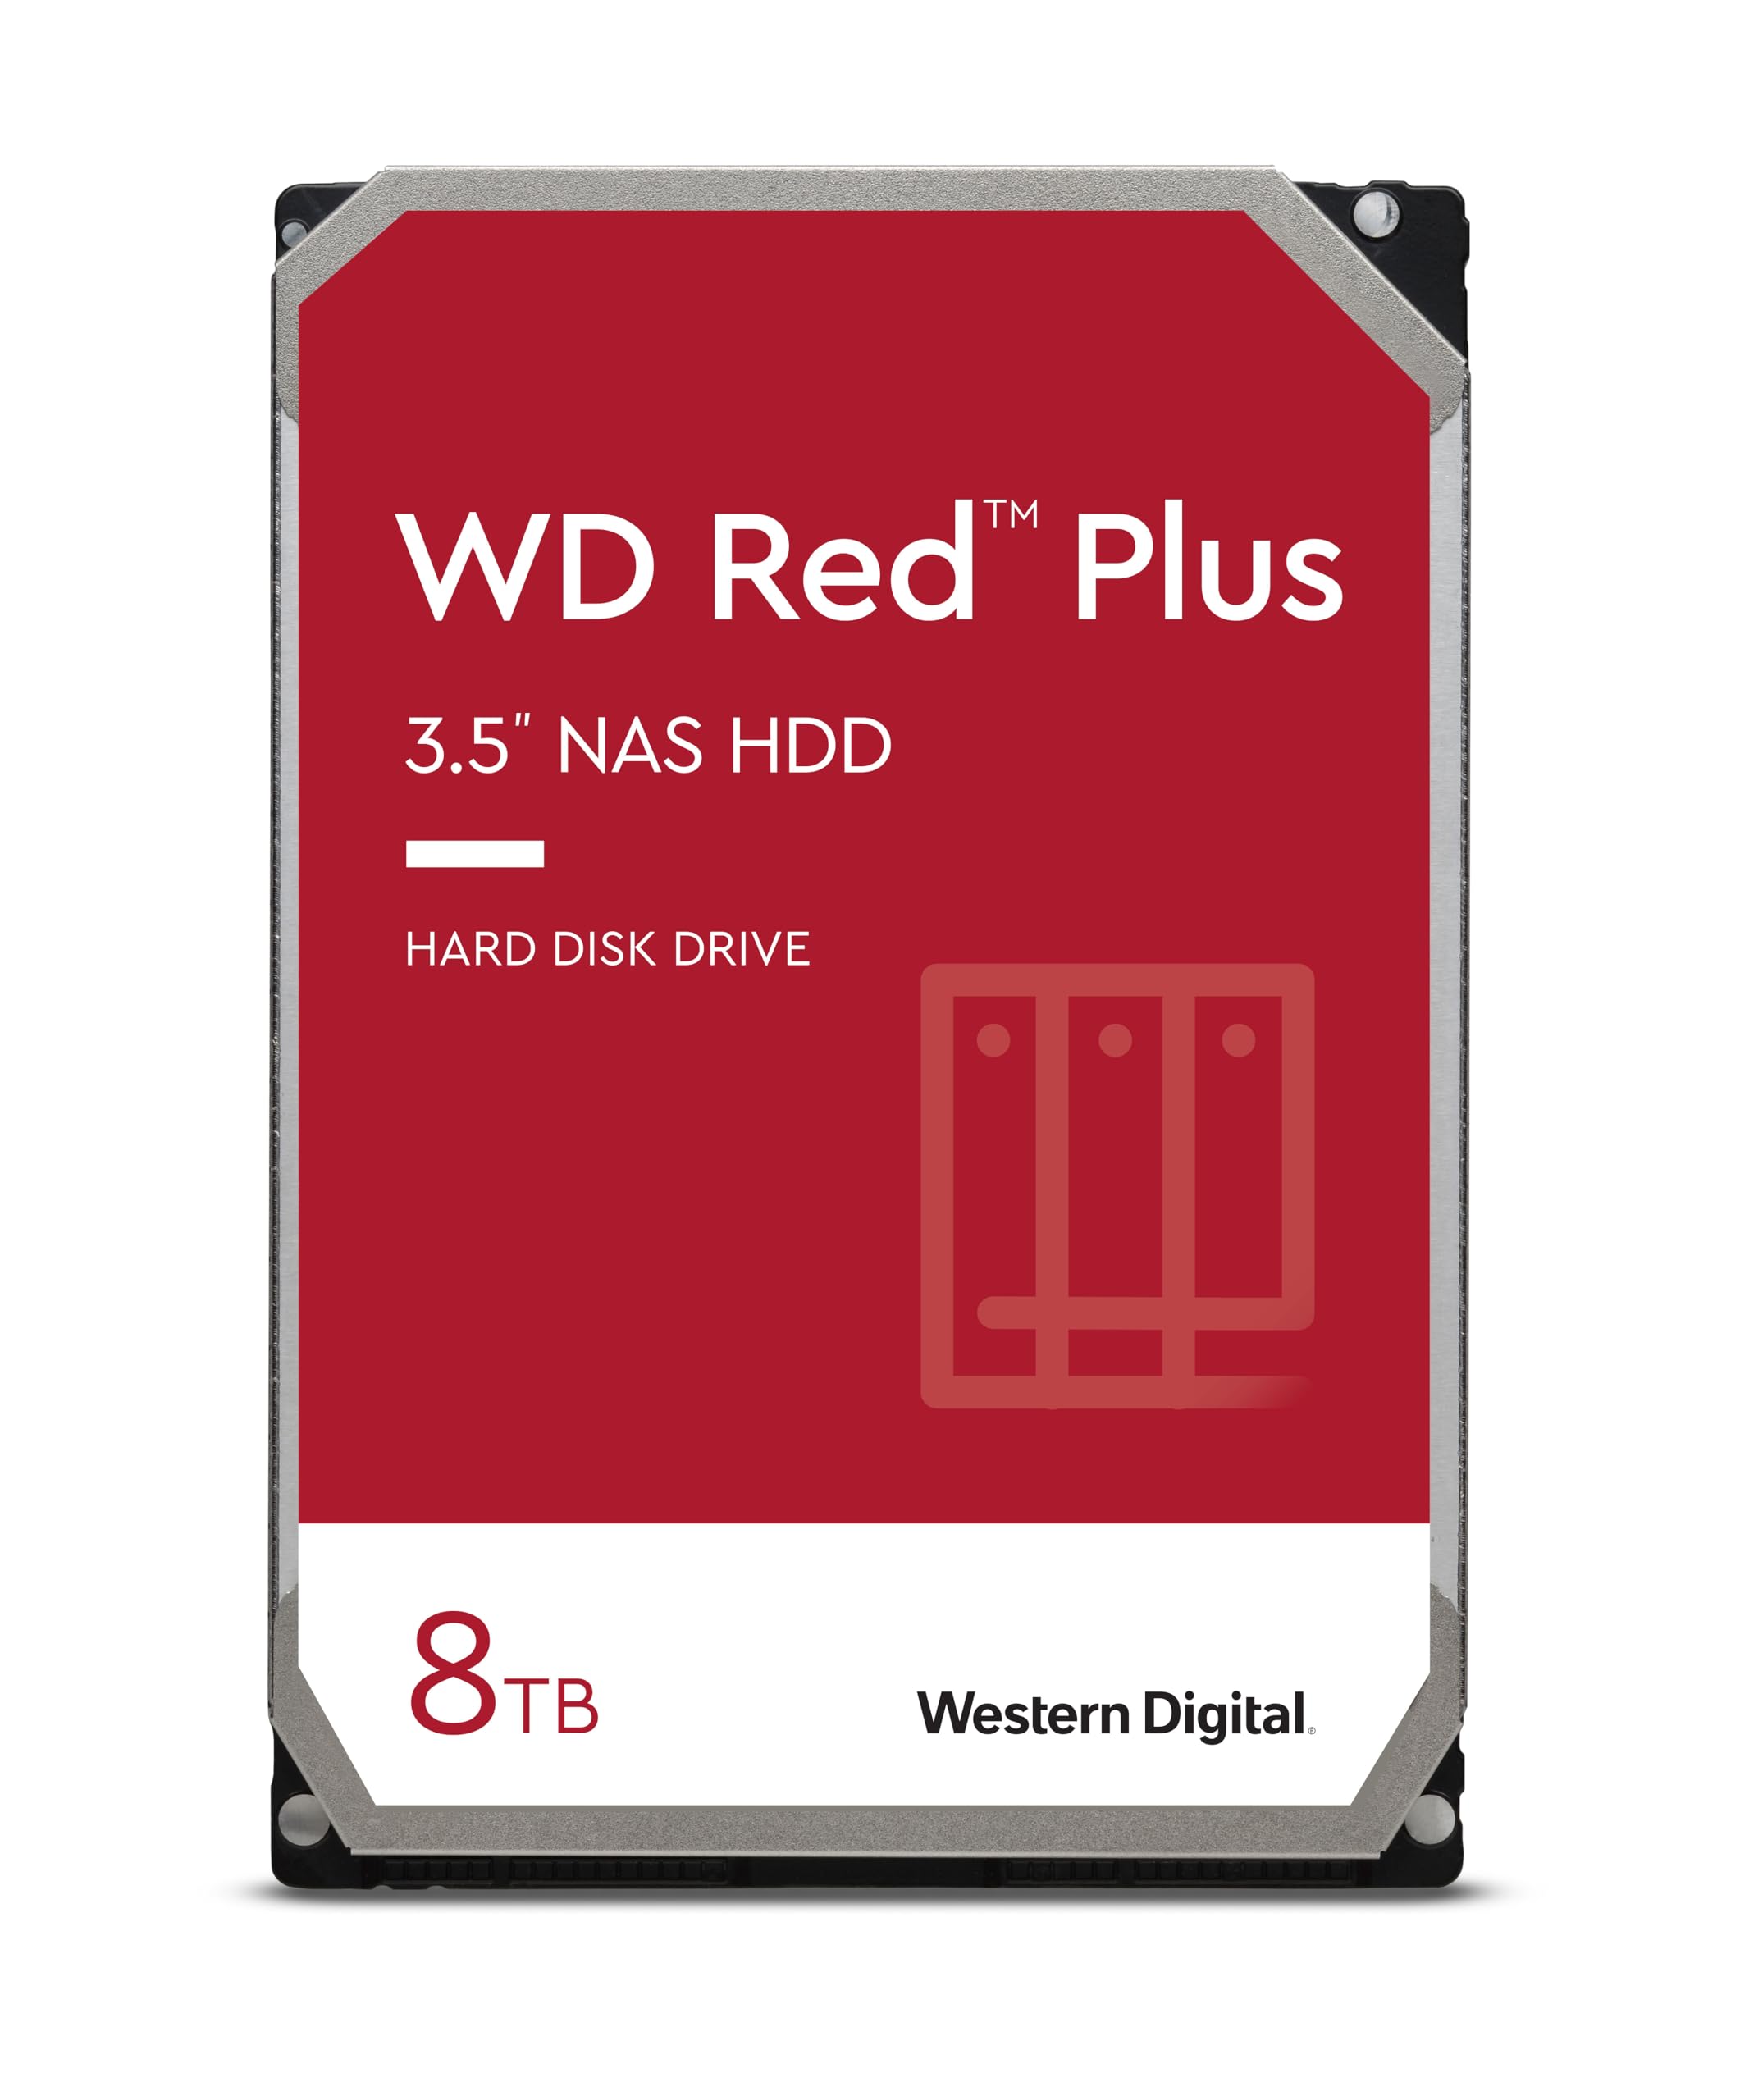 Western Digital 8TB WD Red Plus NAS Internal Hard Drive HDD - 5640 RPM, SATA 6 Gb/s, CMR, 256 MB Cache, 3.5